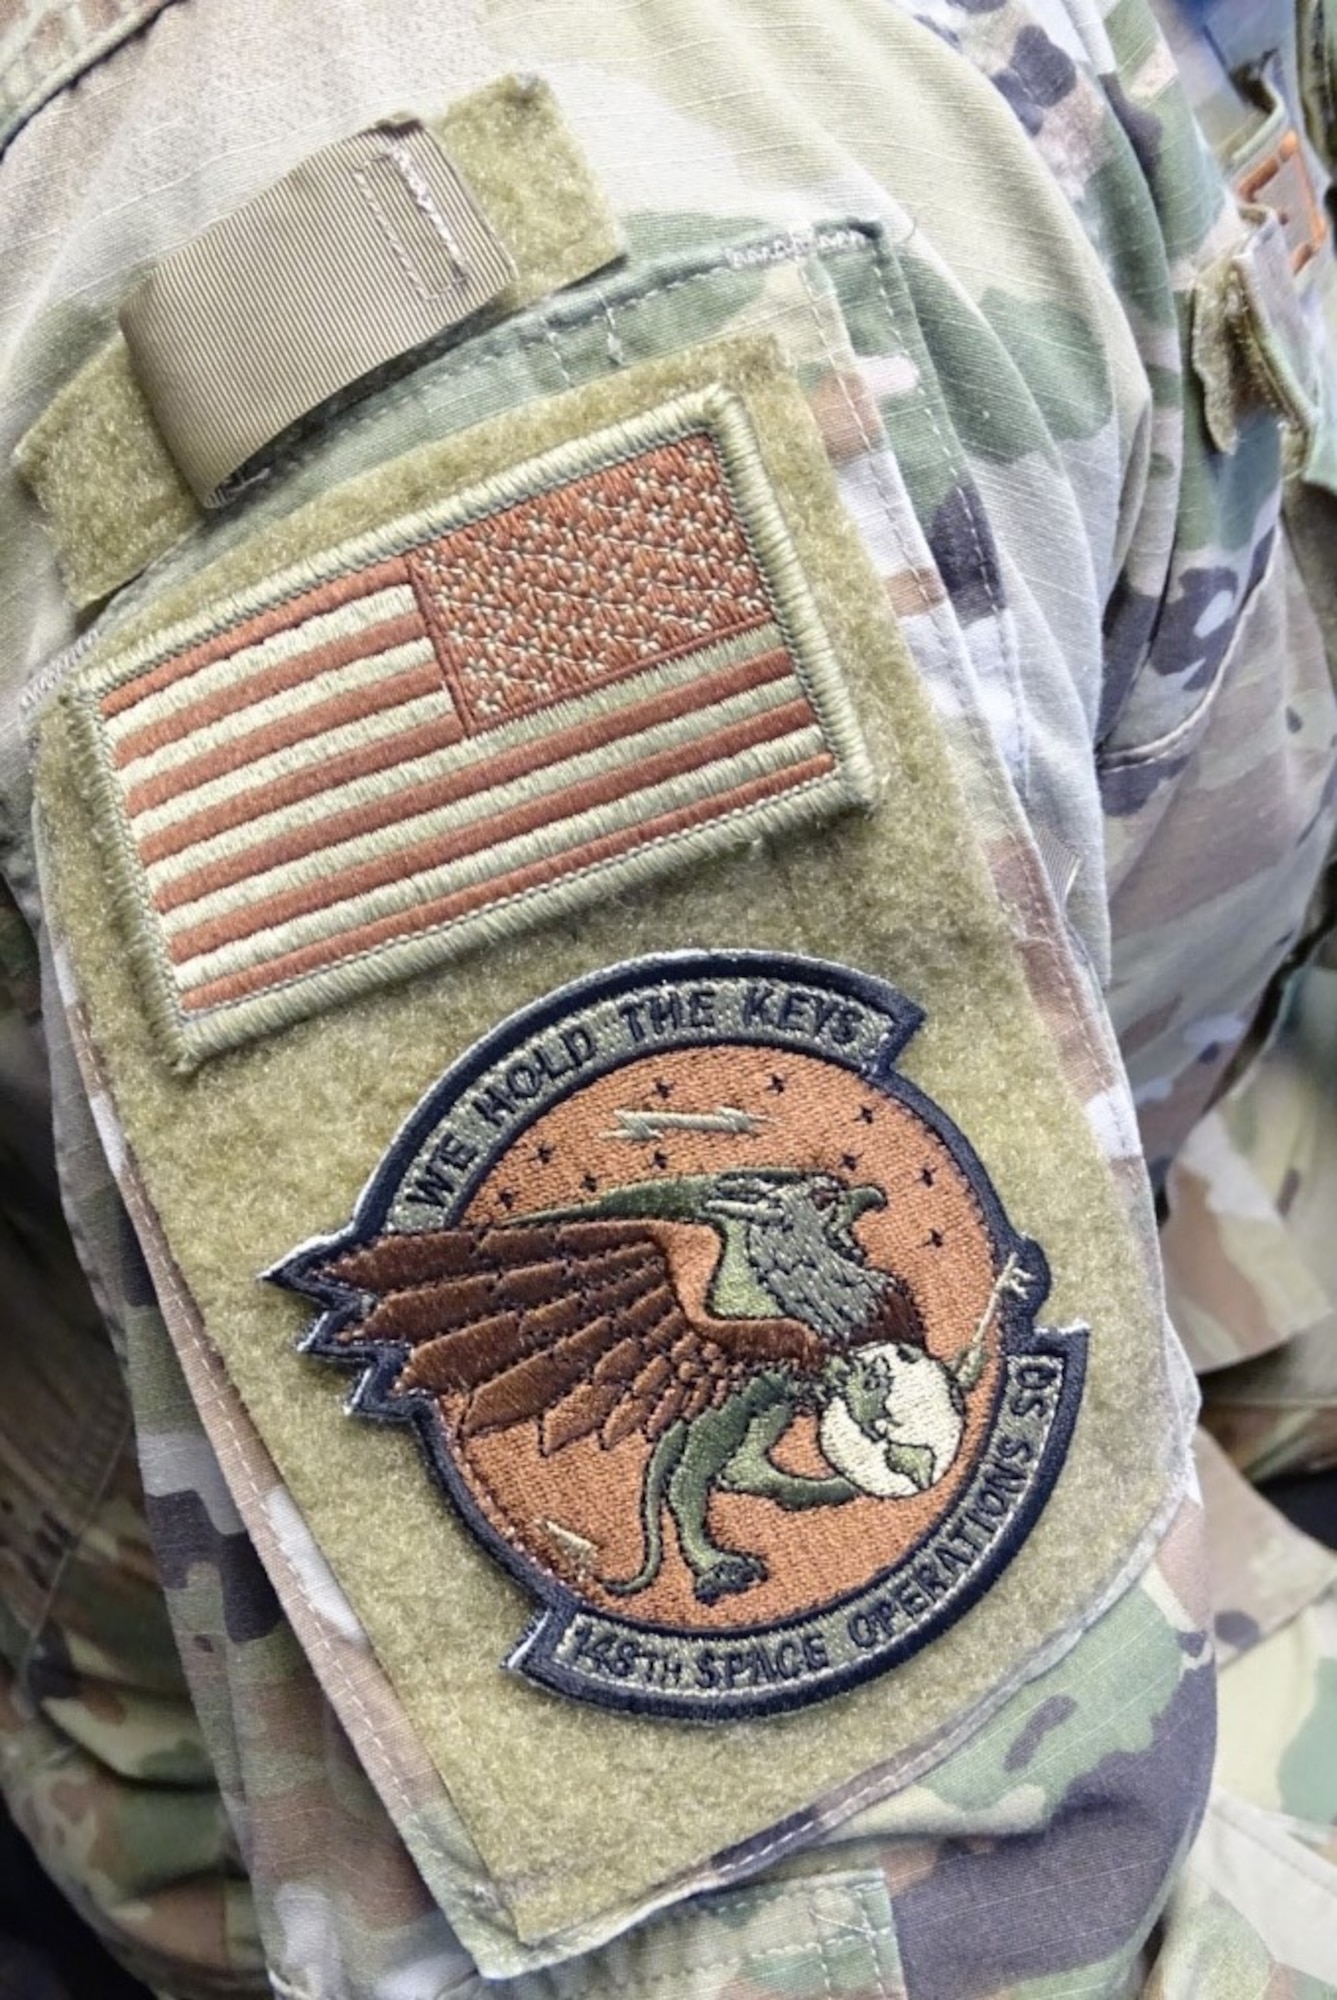 Photo of unit patch on uniform